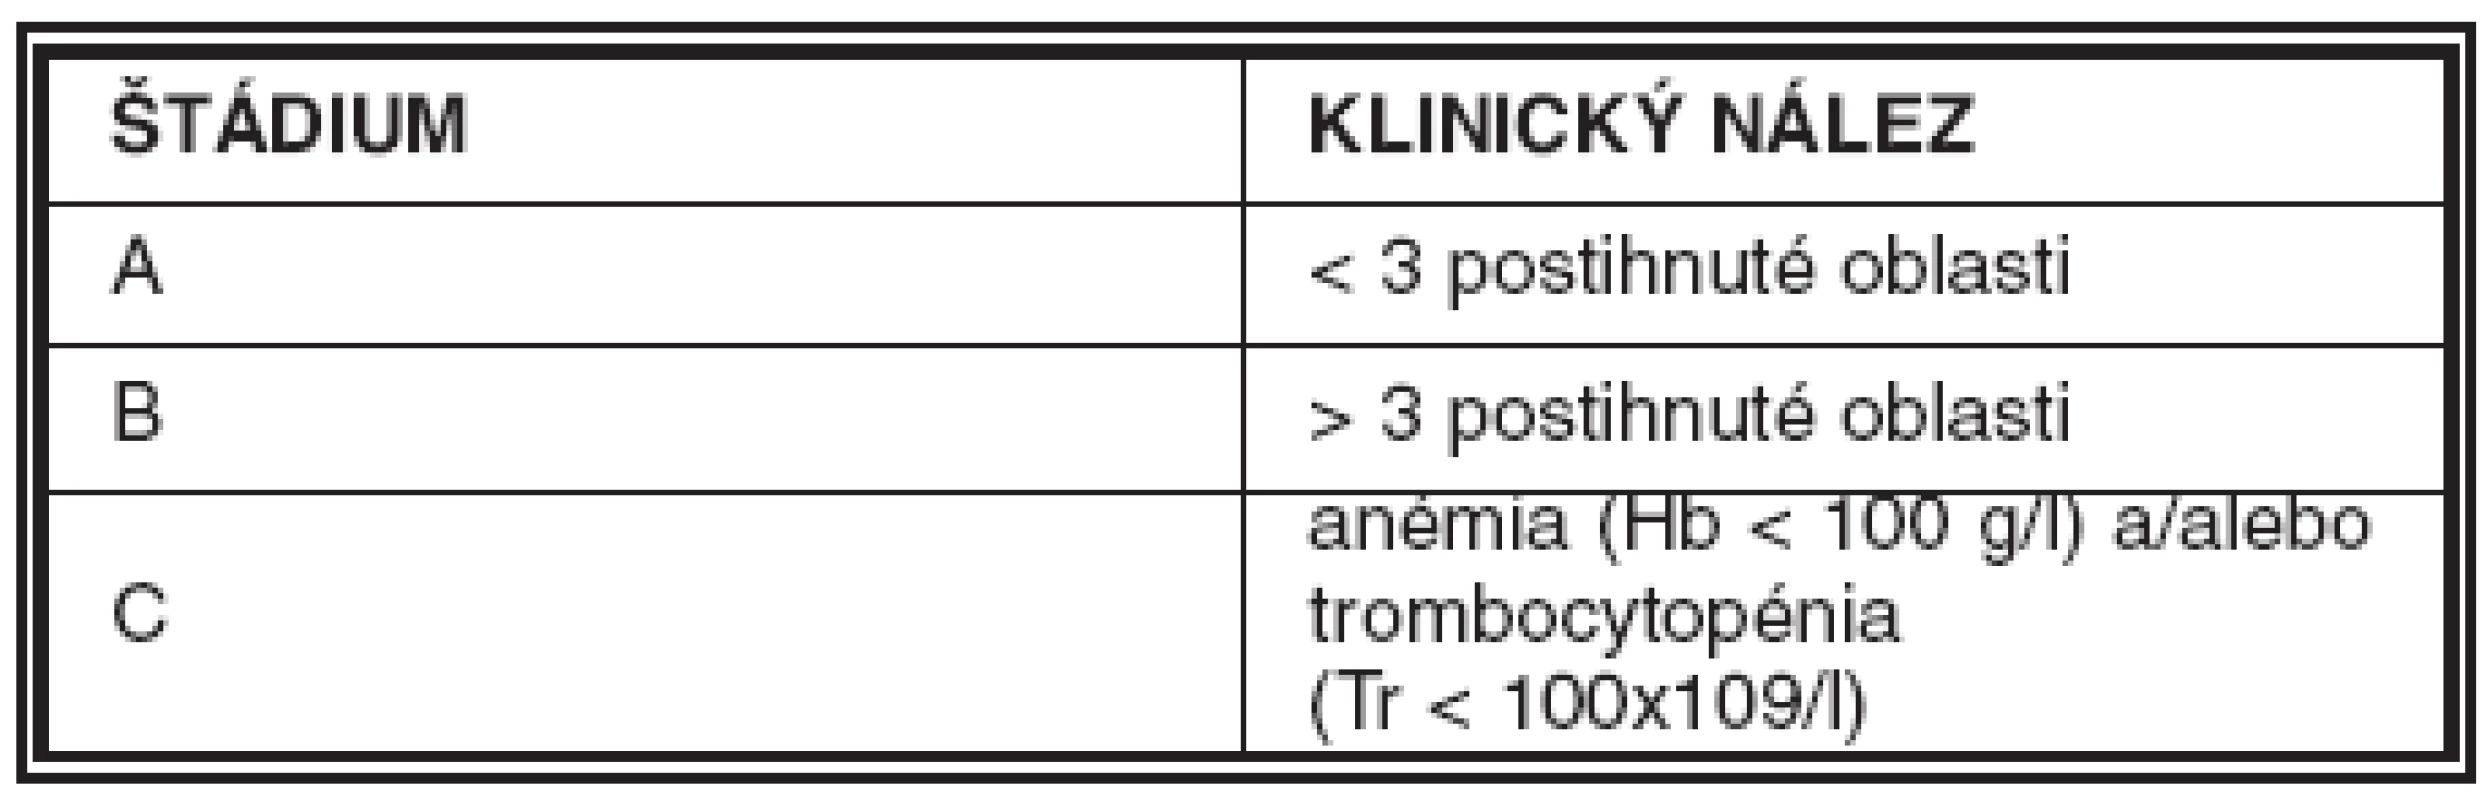 Klinický štádiovací systém podľa Bineta. Postihnutými oblasťami sa rozumie zväčšenie krčných, axilárnych či inguinálnych lymfatických uzlín (12)